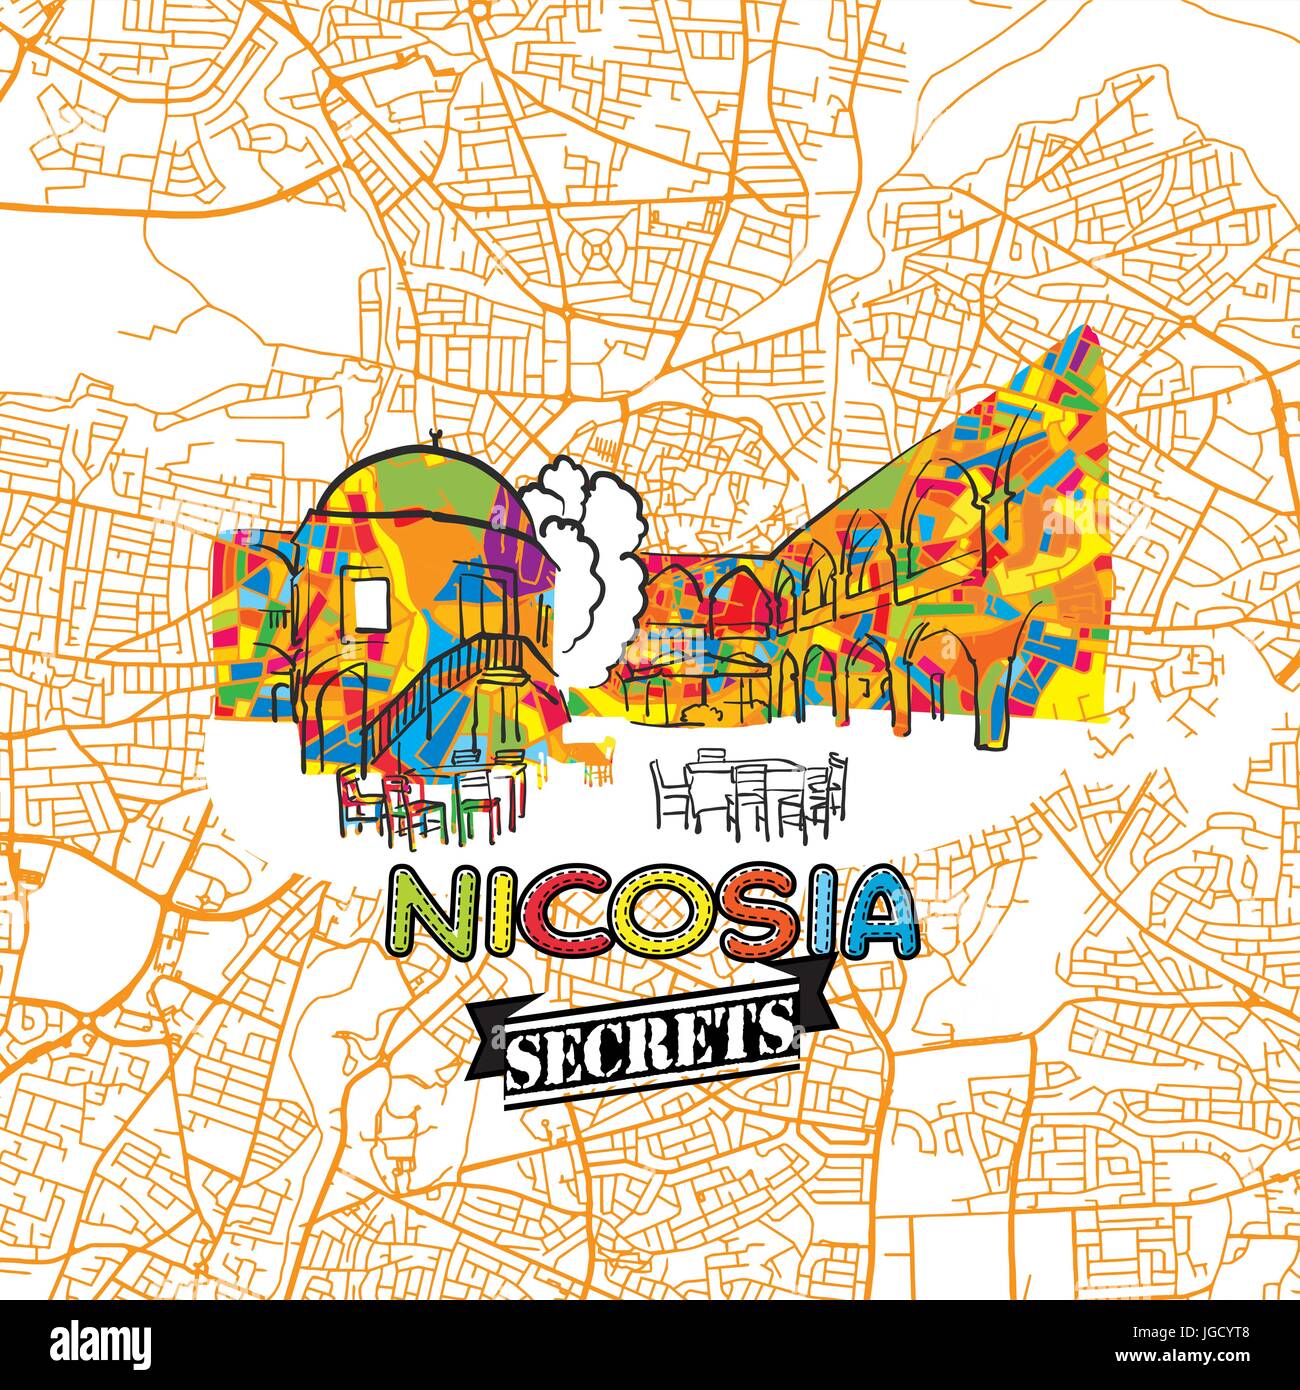 Nikosia Reise Geheimnisse Art Map für die Zuordnung von Experten und Reiseführer. Handgemachte Stadt Logo, Typo-Abzeichen und Hand gezeichnete Vektor-Bild an der Spitze sind gruppiert eine Stock Vektor